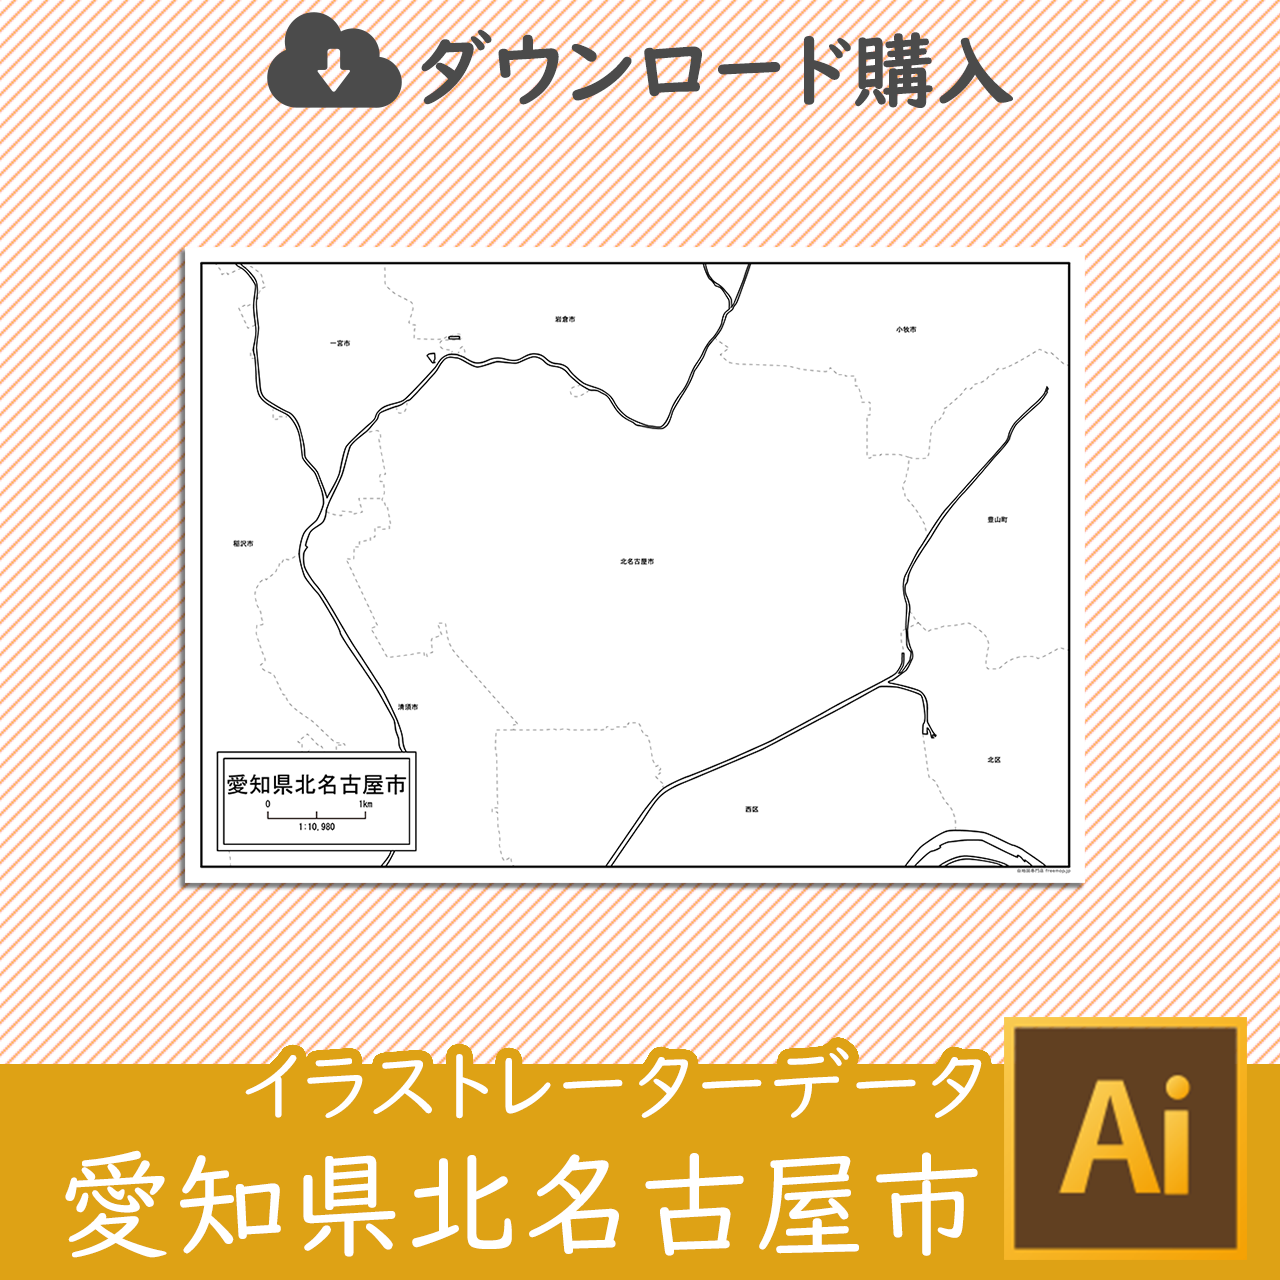 北名古屋市のaiデータのサムネイル画像